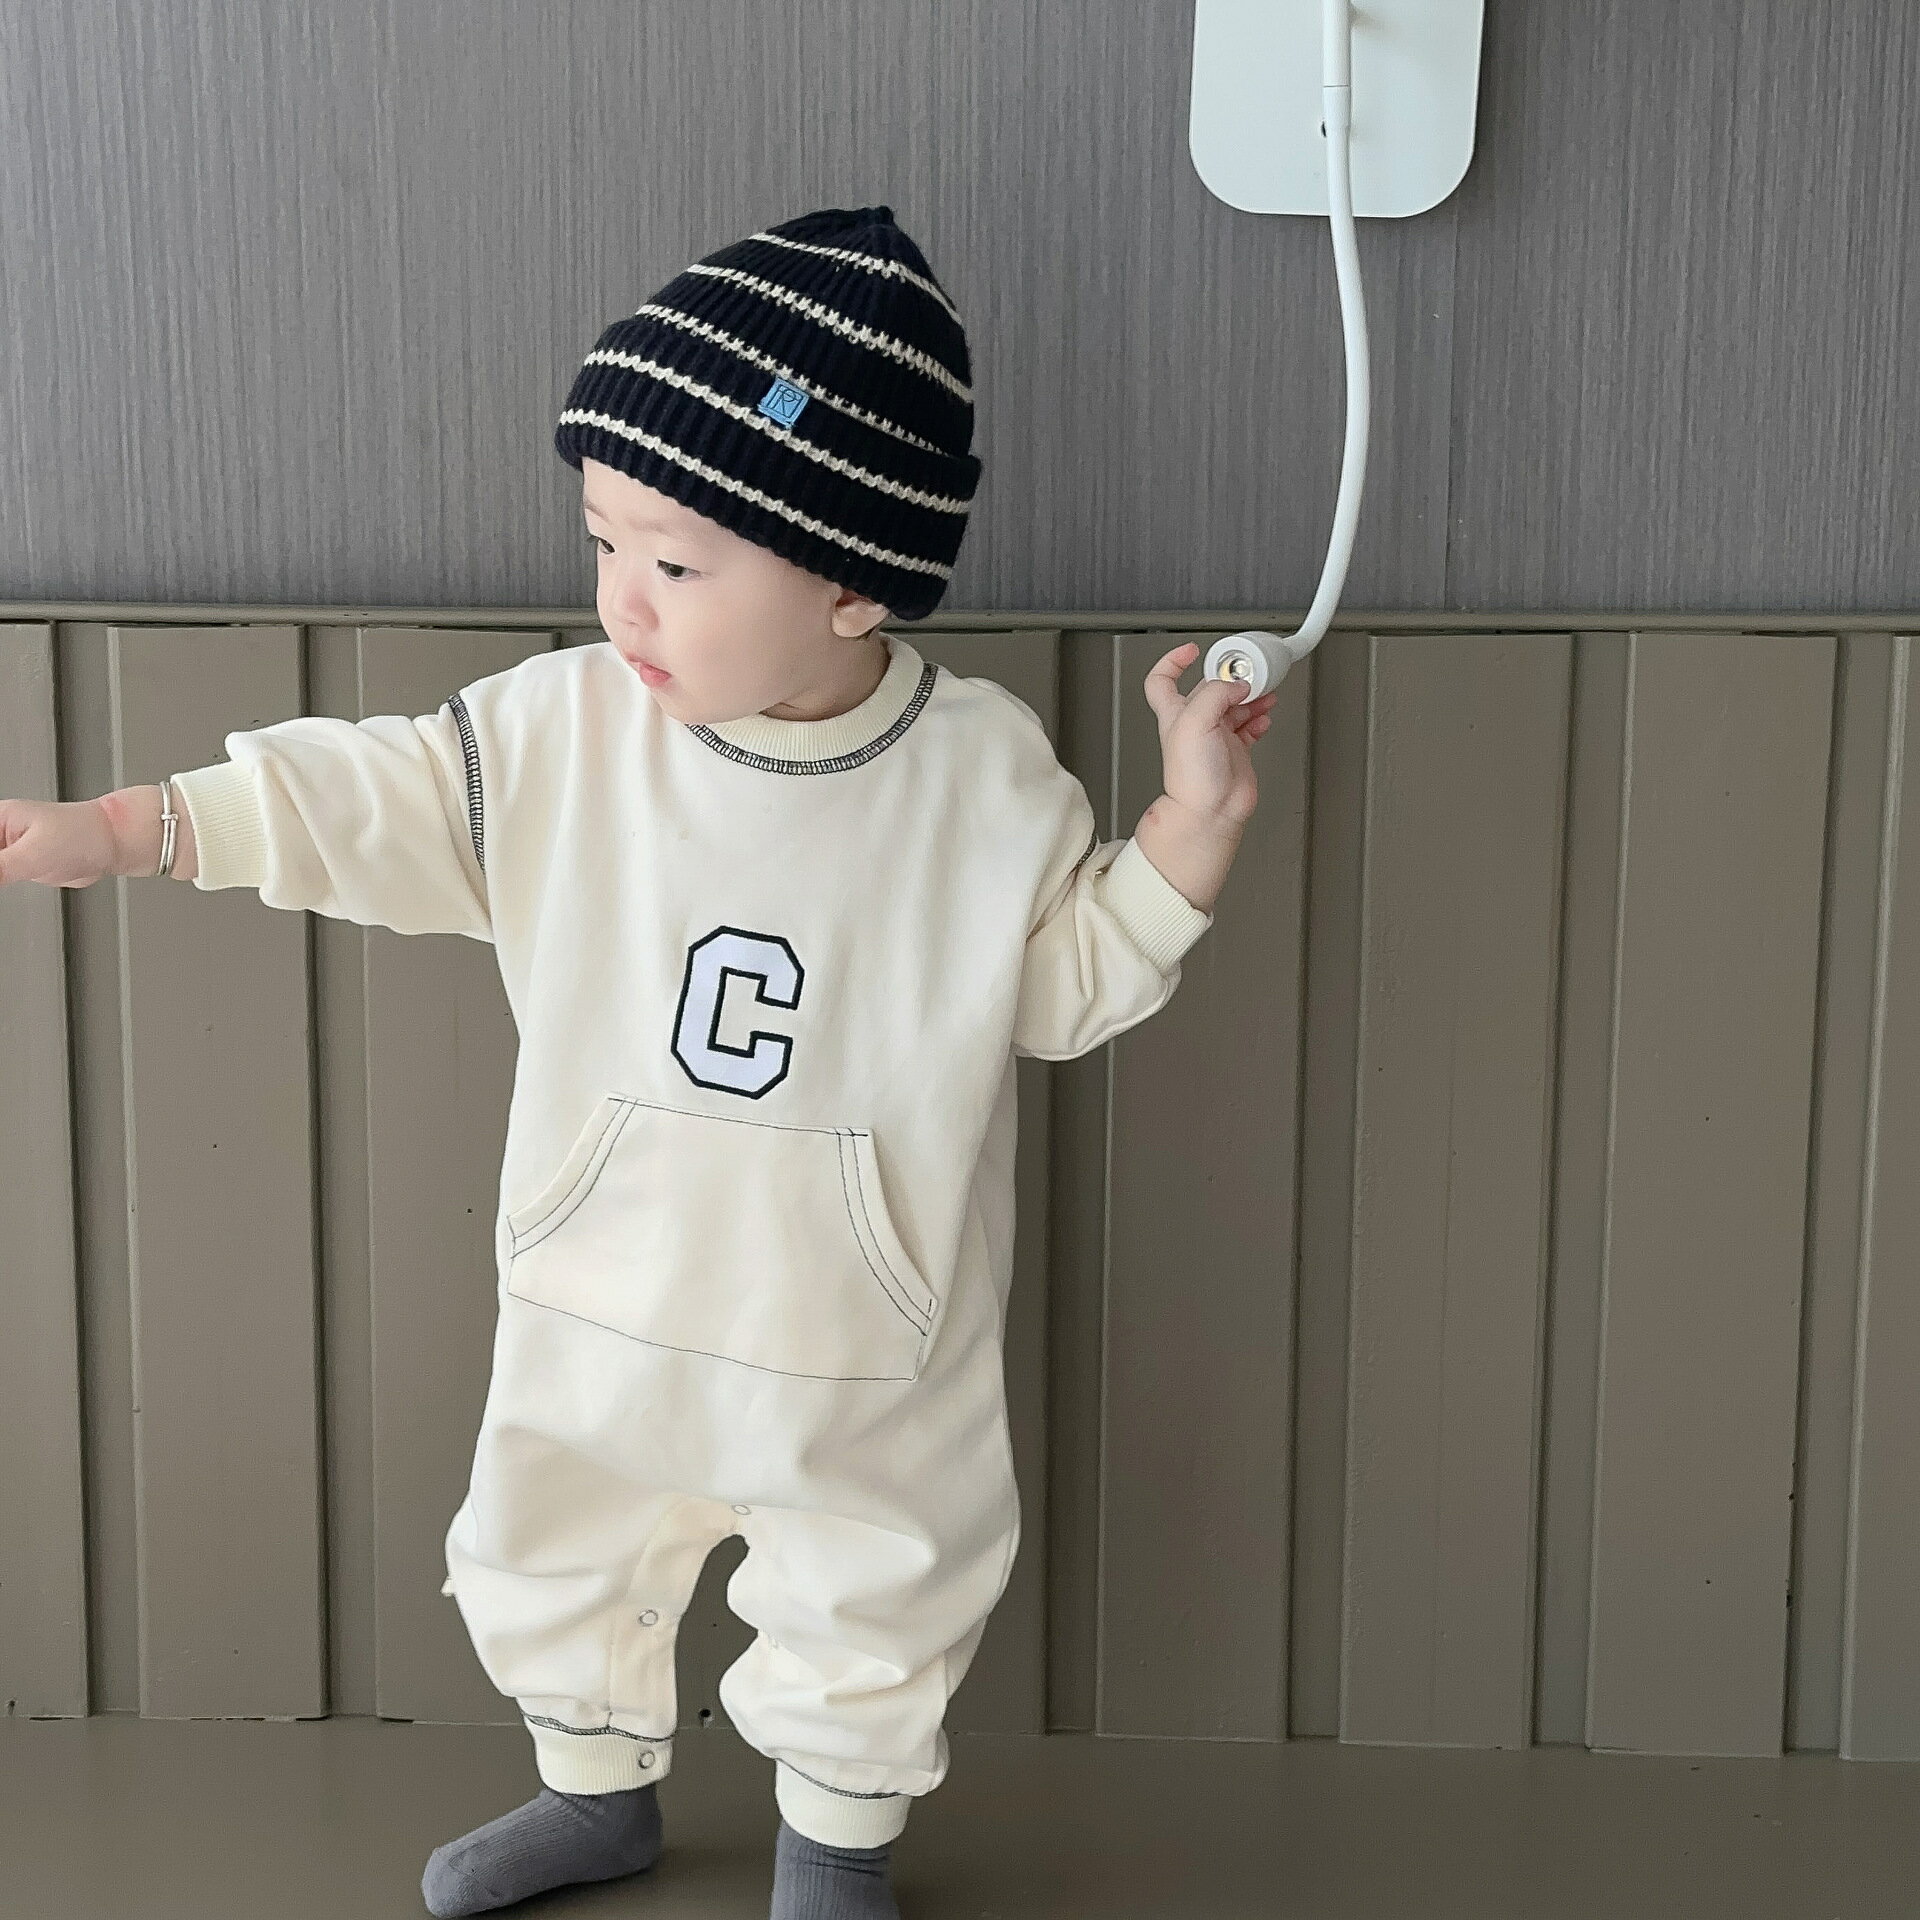 嬰兒春季外出服韓版童裝寶寶長袖哈衣男童C字母連體衣春款包屁衣